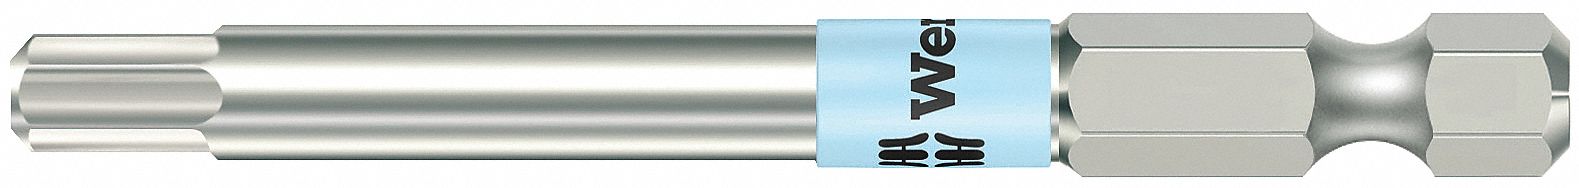 05008015001, Destornillador estándar Wera, tipo Destornillador estándar,  punta plana 3,5 mm, hoja de 100 mm